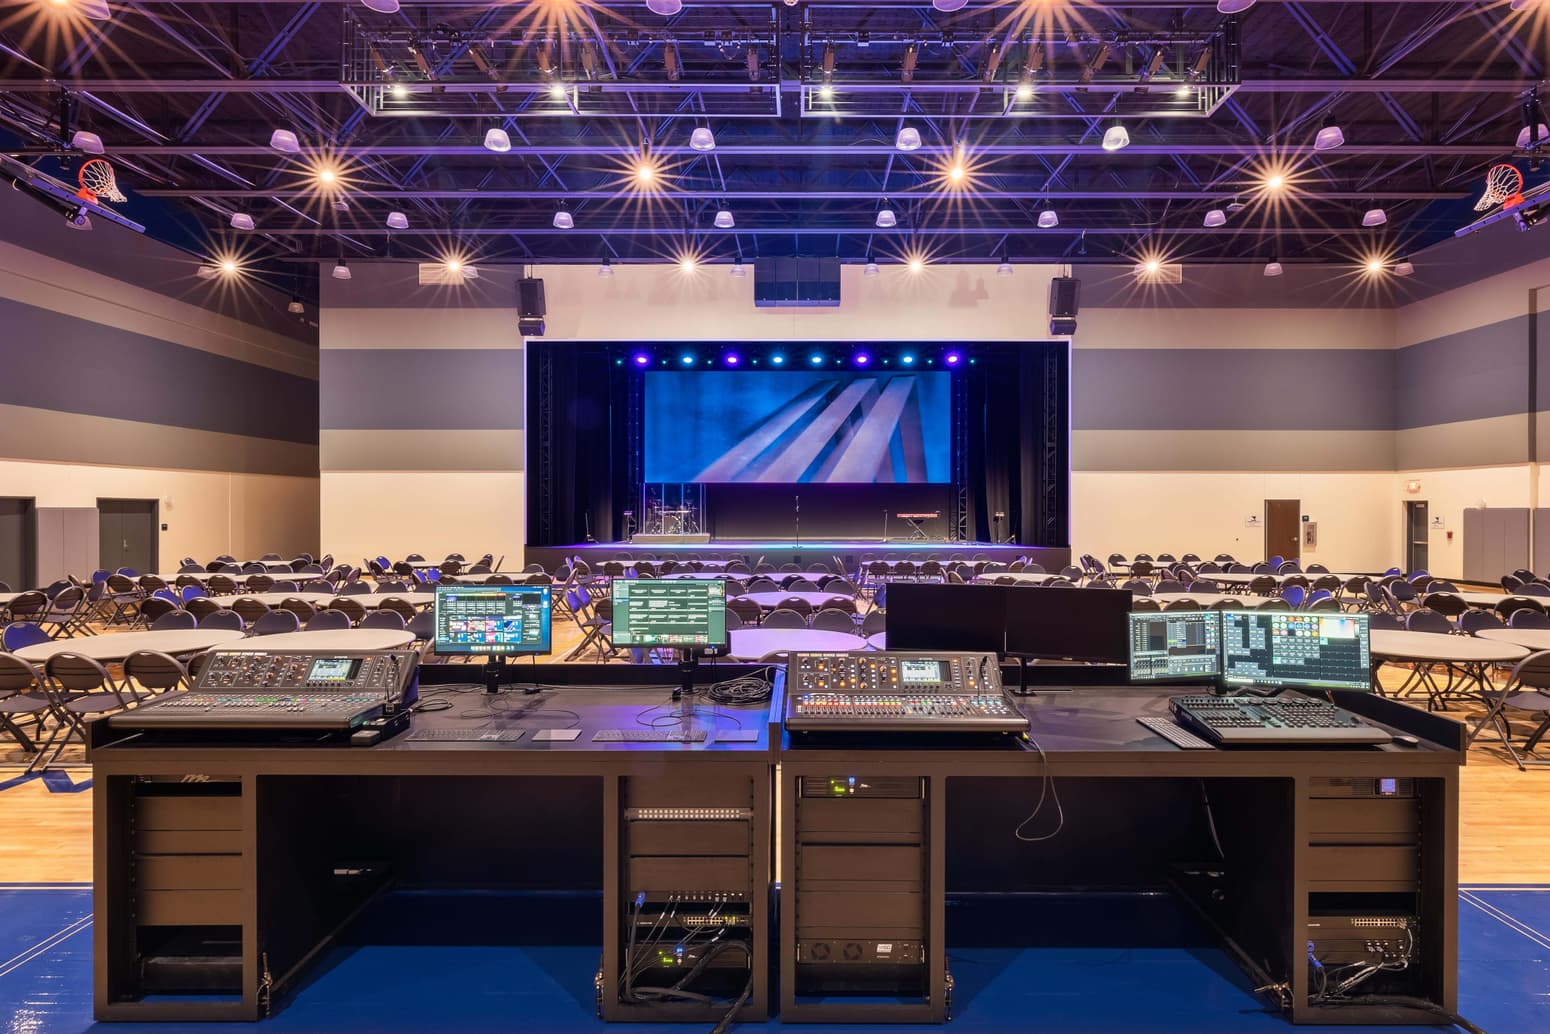 Professional Audio Video Lighting Setup Church Auditorium